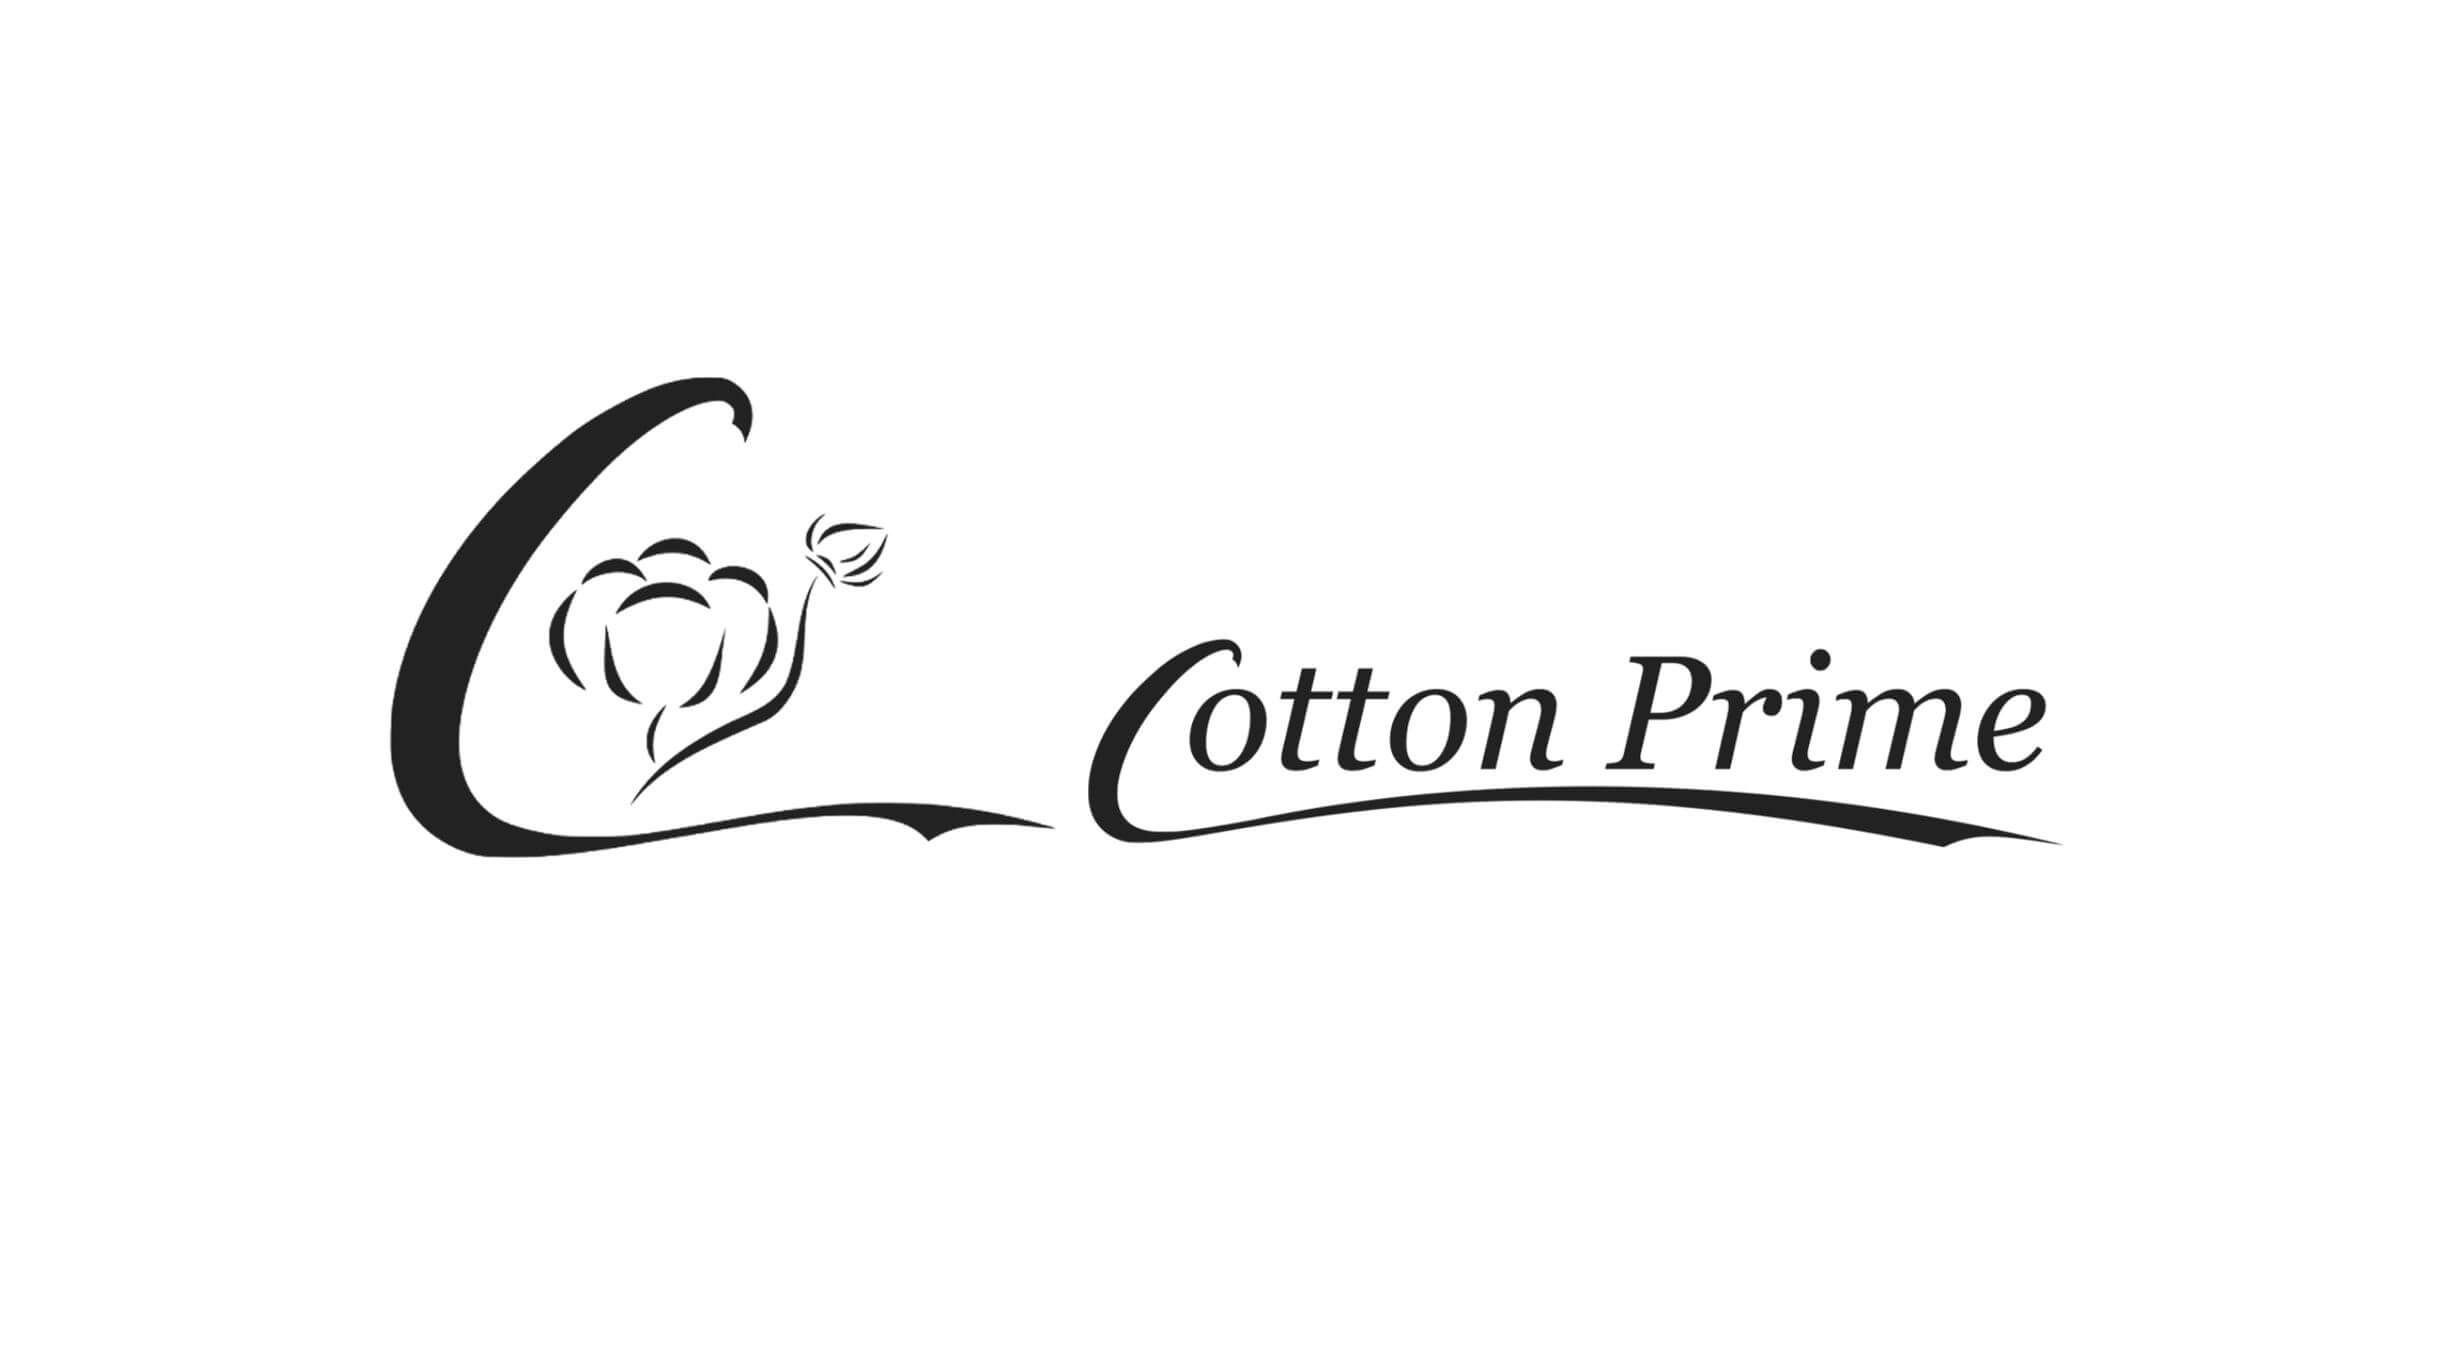 Cotton-Prime